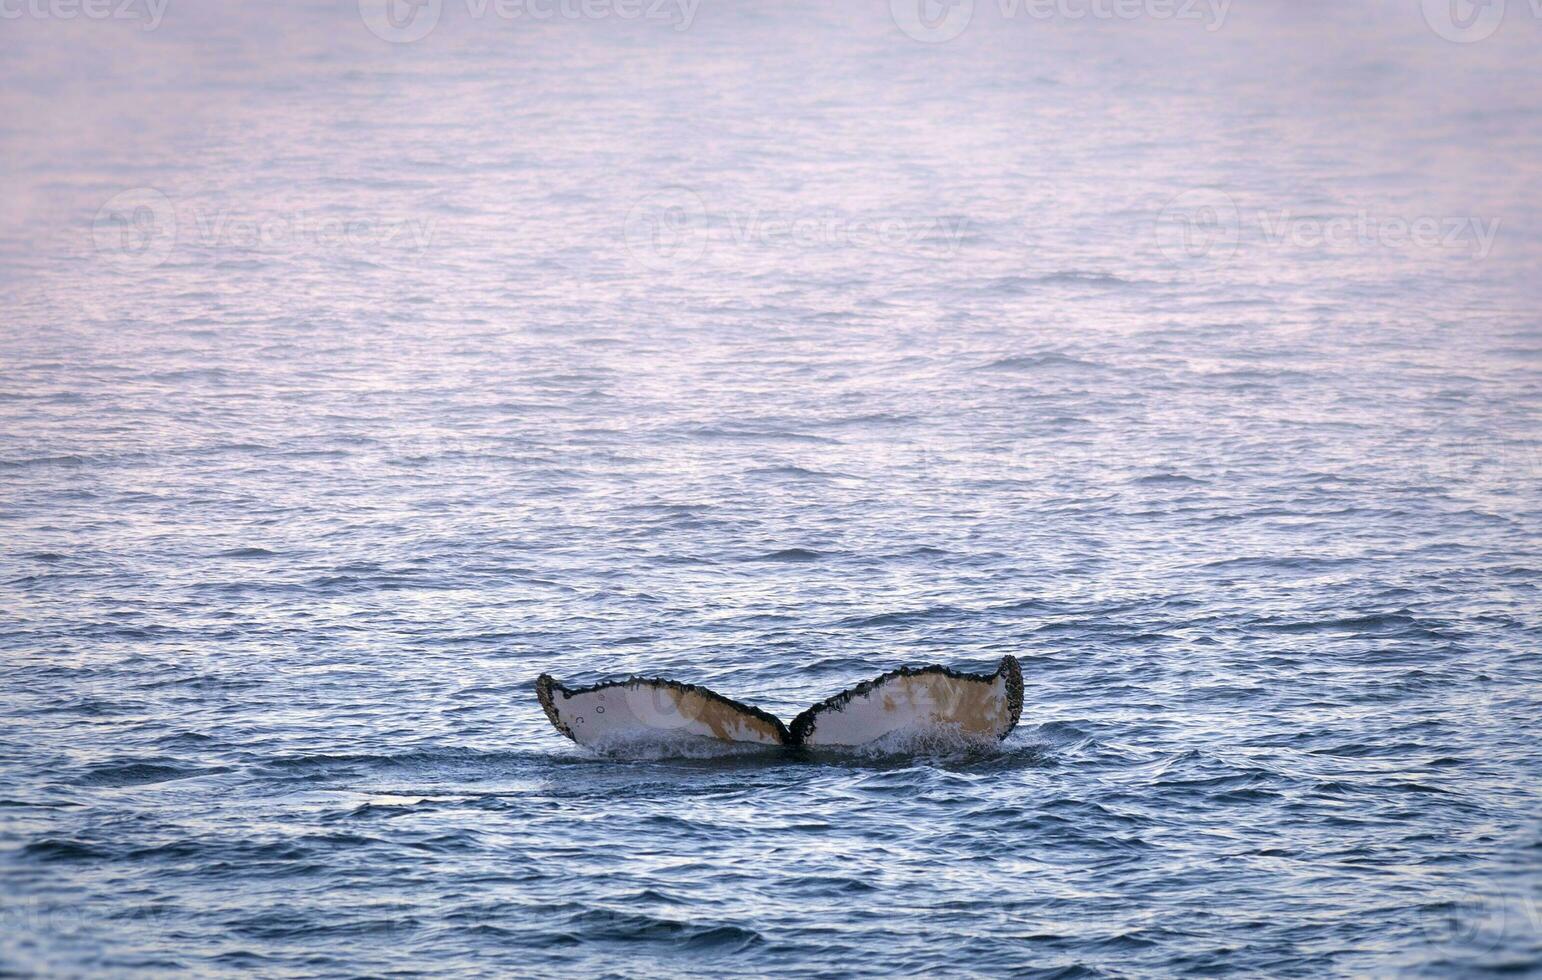 Humpback whale diving,Megaptera novaeangliae,Antrtica. photo